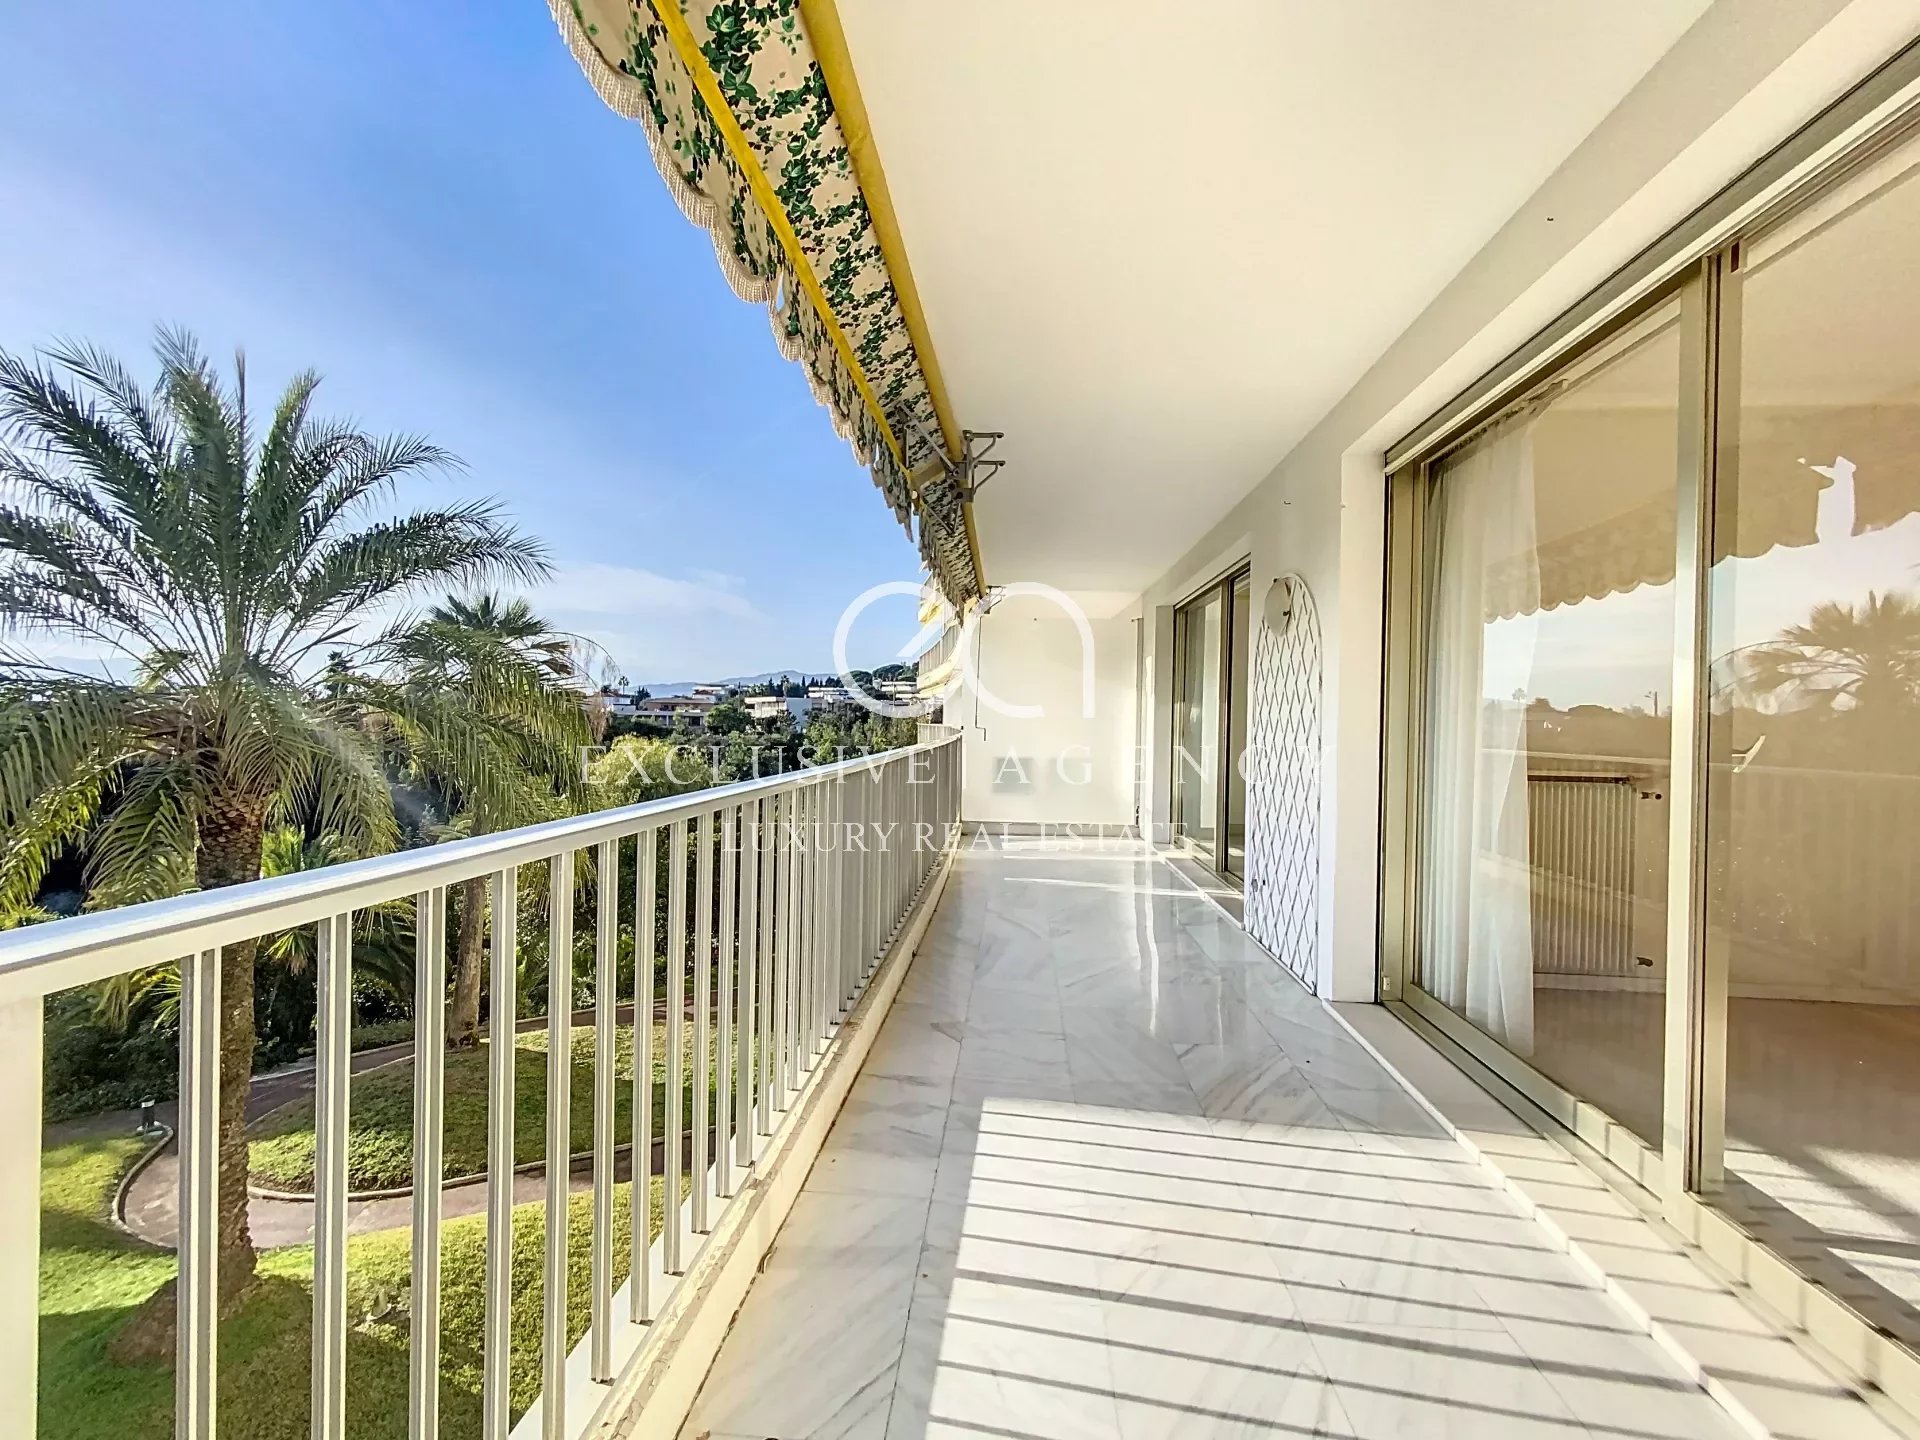 Verkauf Cannes 4 Zimmer 118m² mit Terrasse und Meerblick